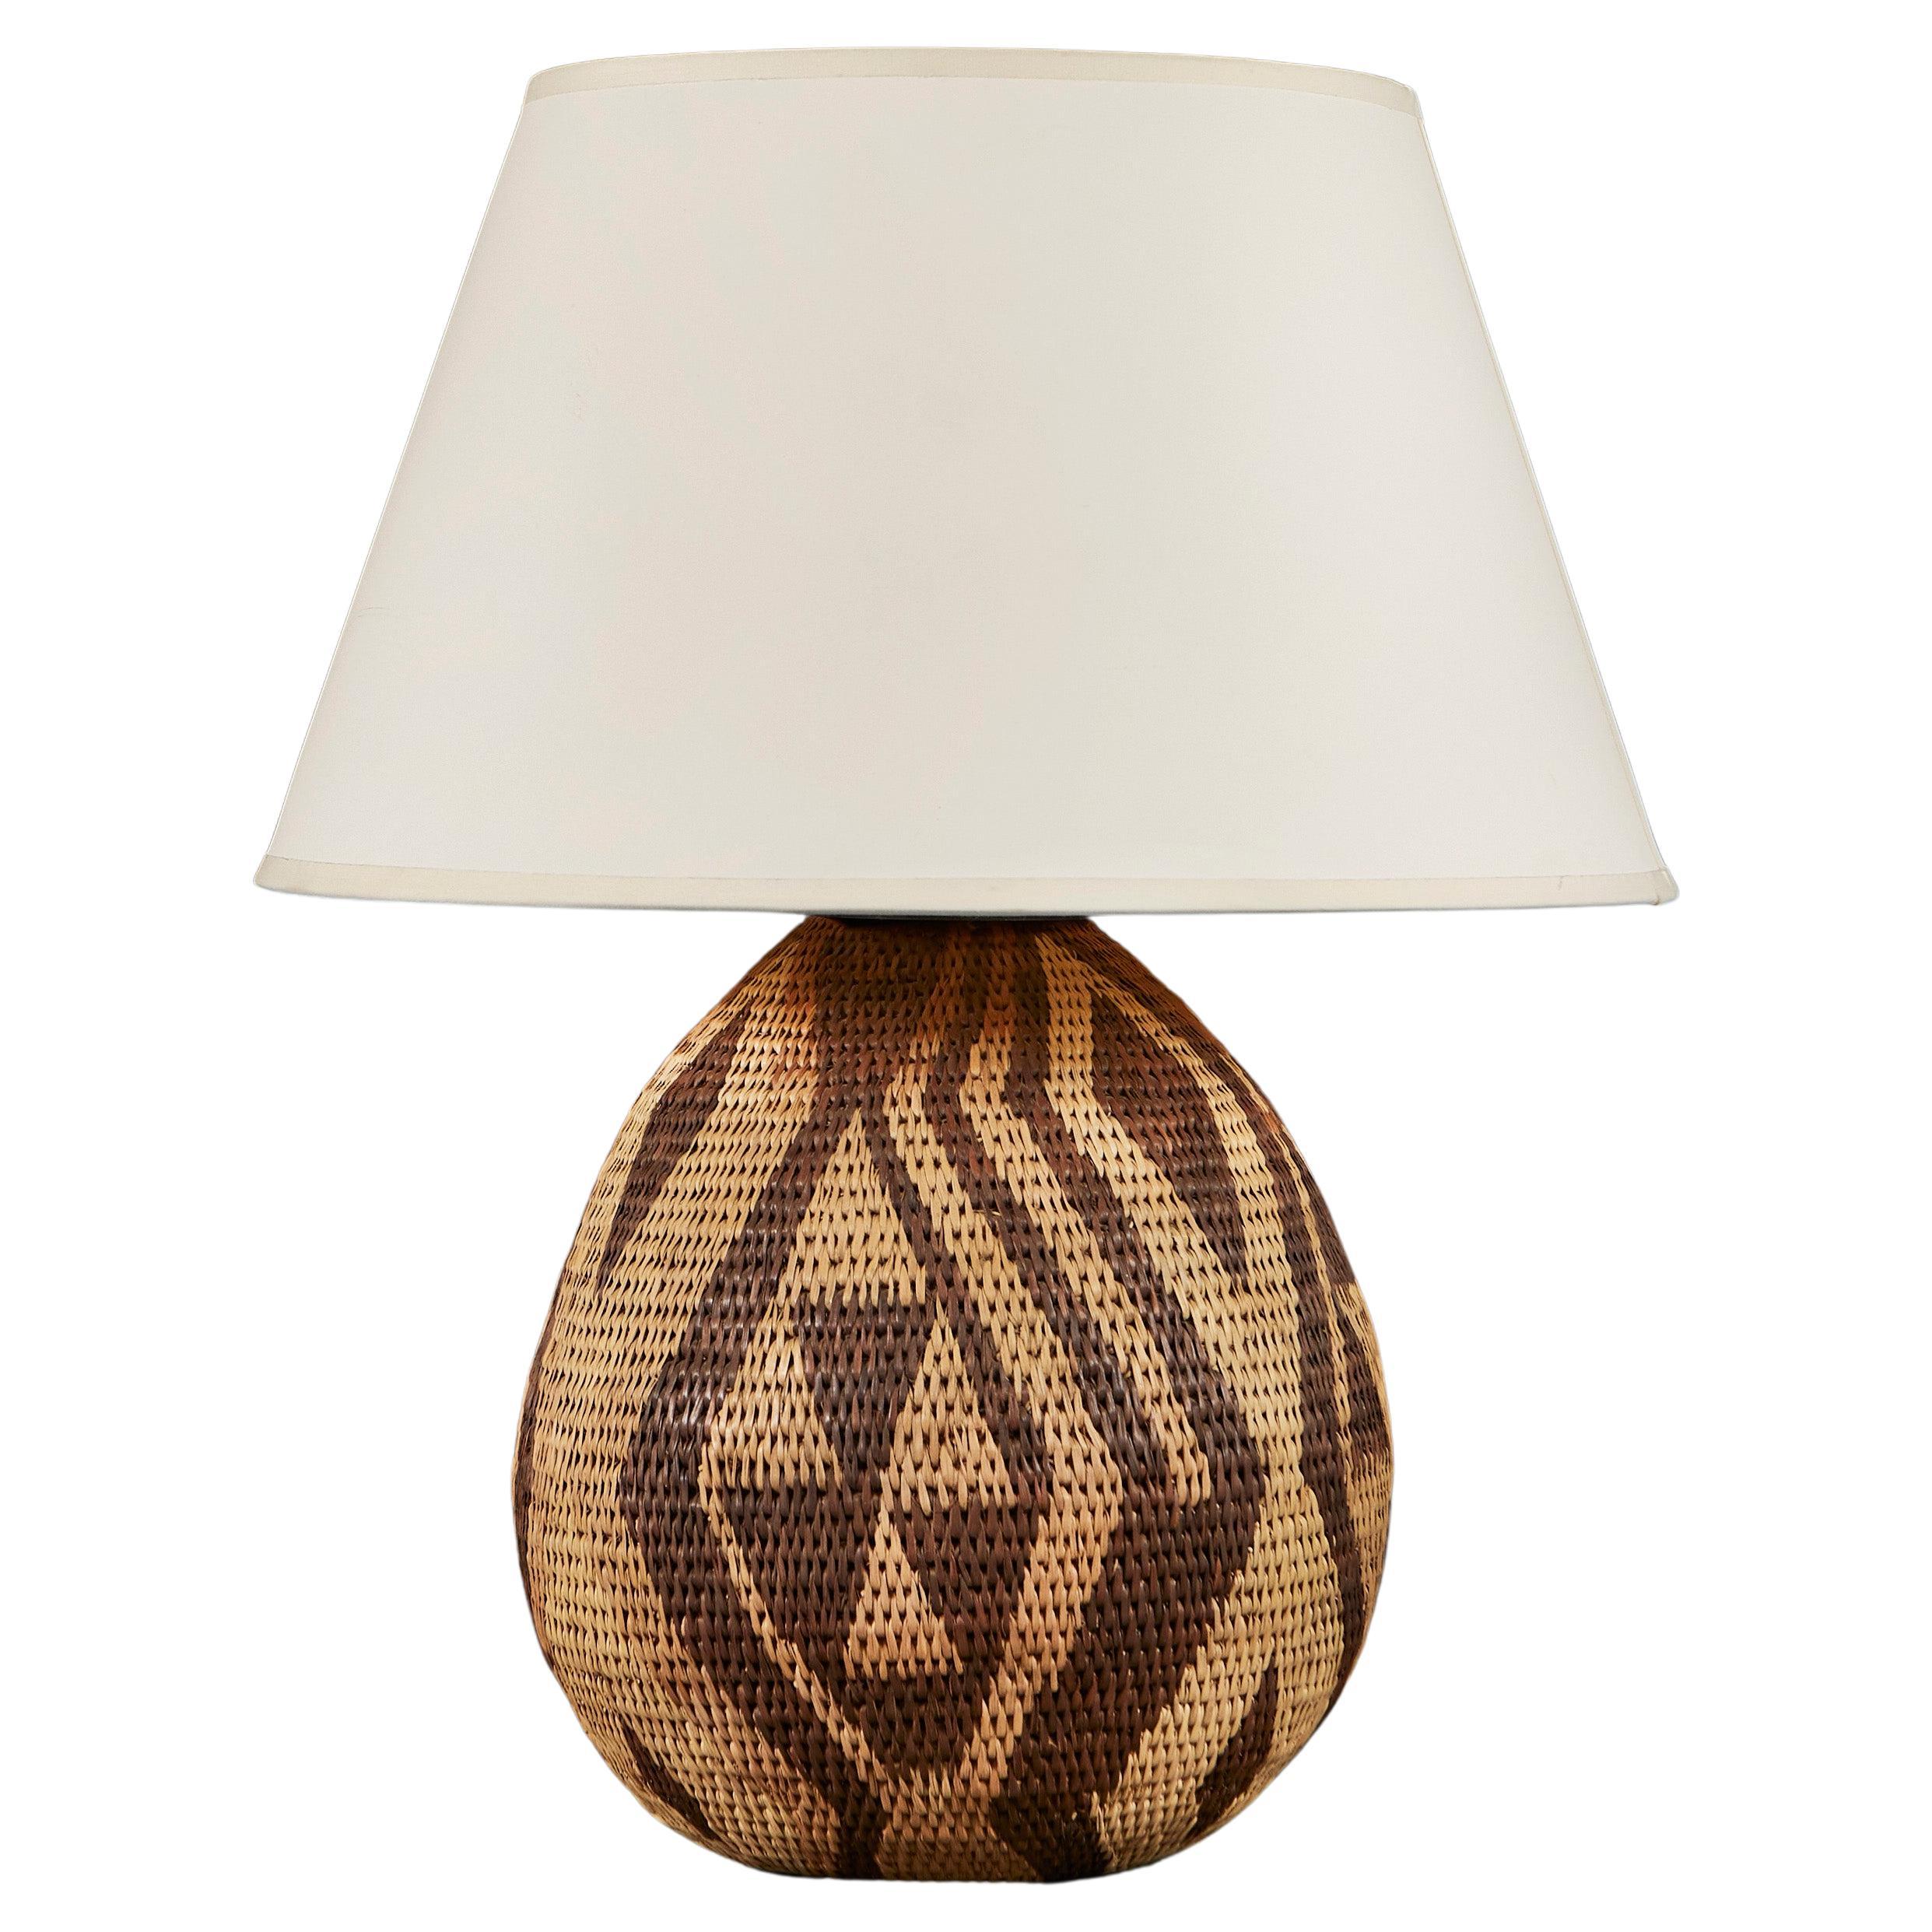 A Zulu Basket Weave Lamp